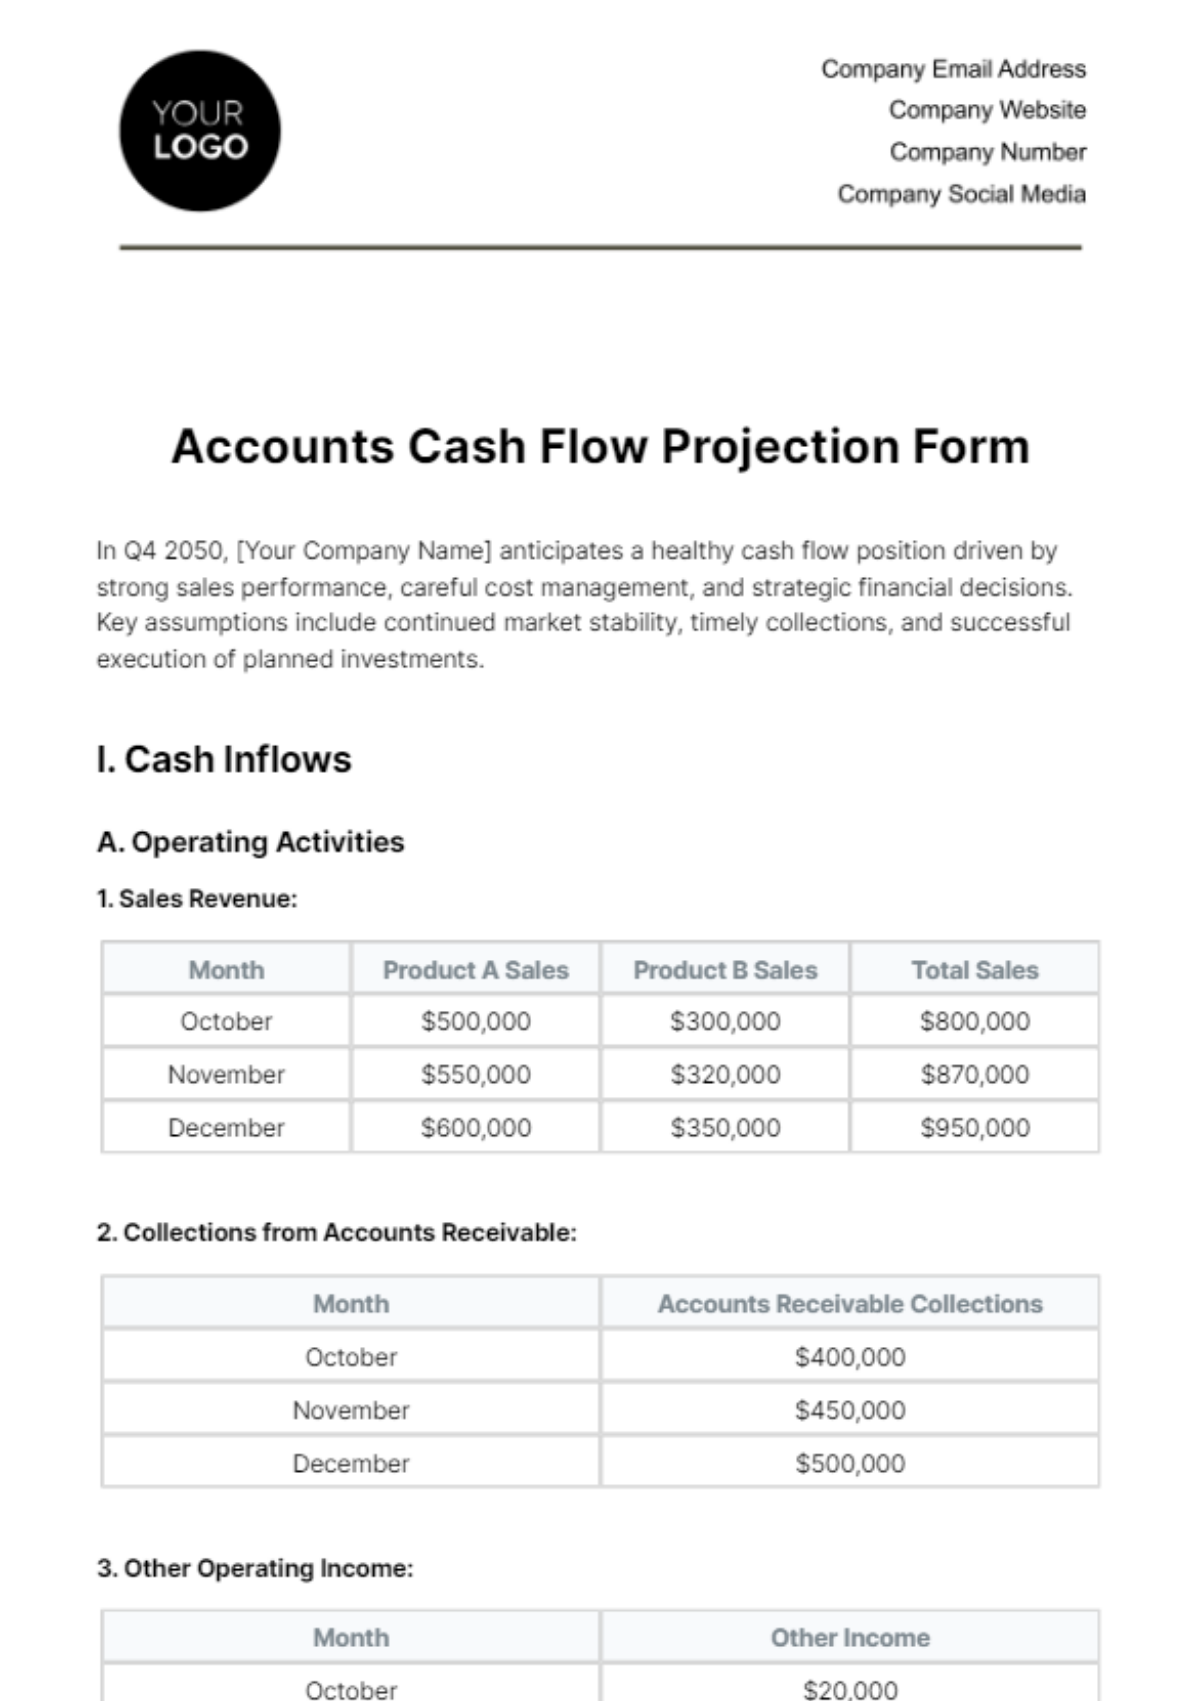 Accounts Cash Flow Projection Form Template